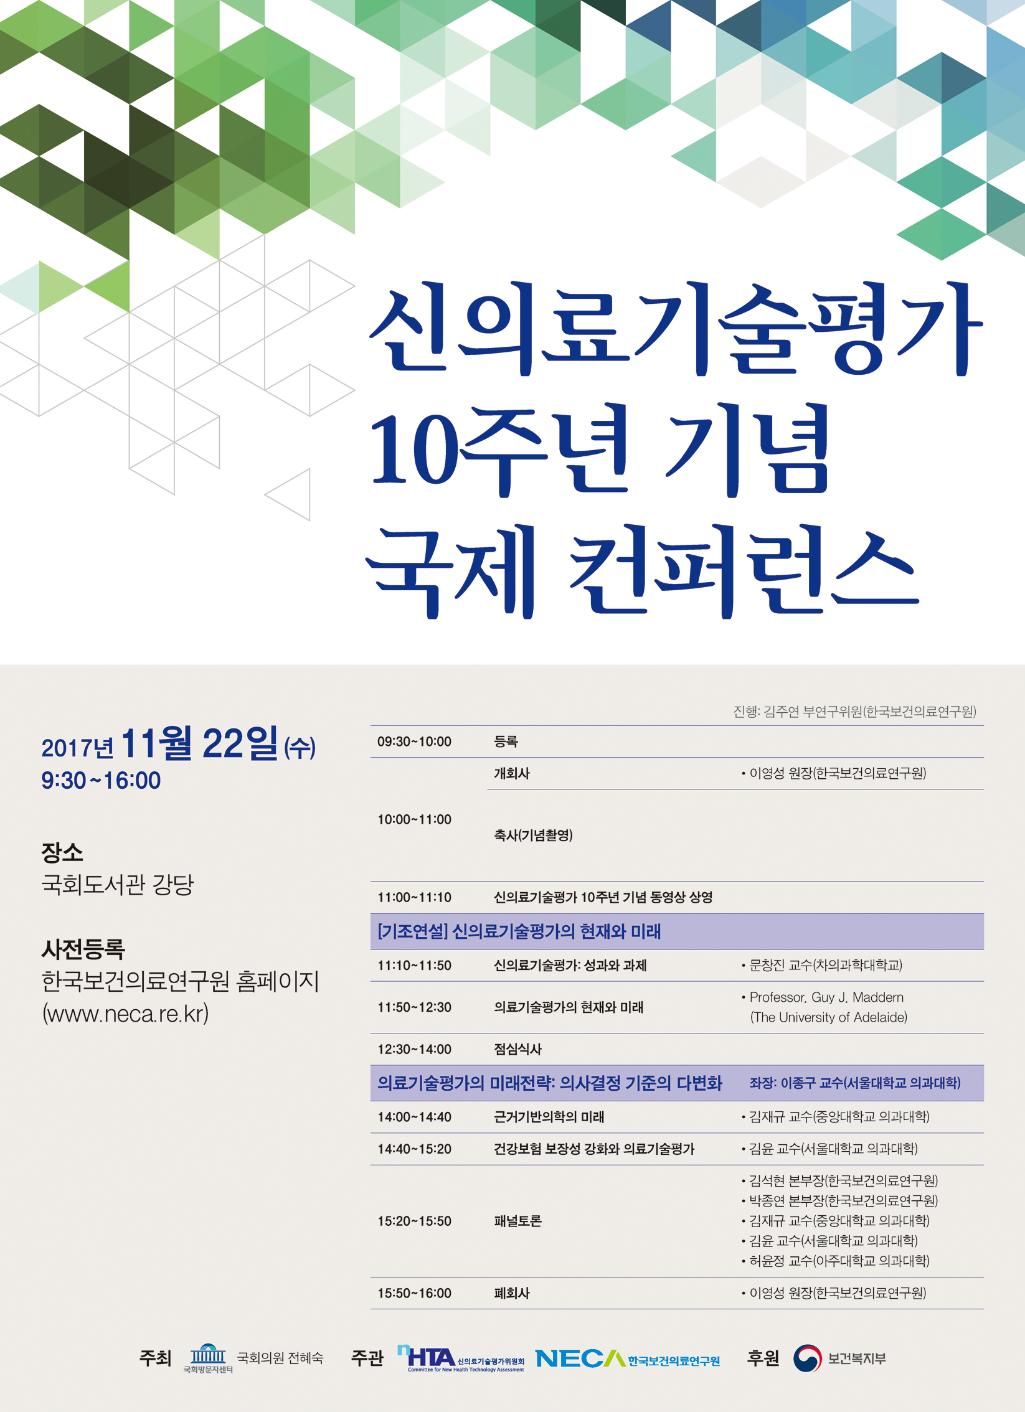 신의료기술평가 10주년 기념 국제 컨퍼런스 개최 안내